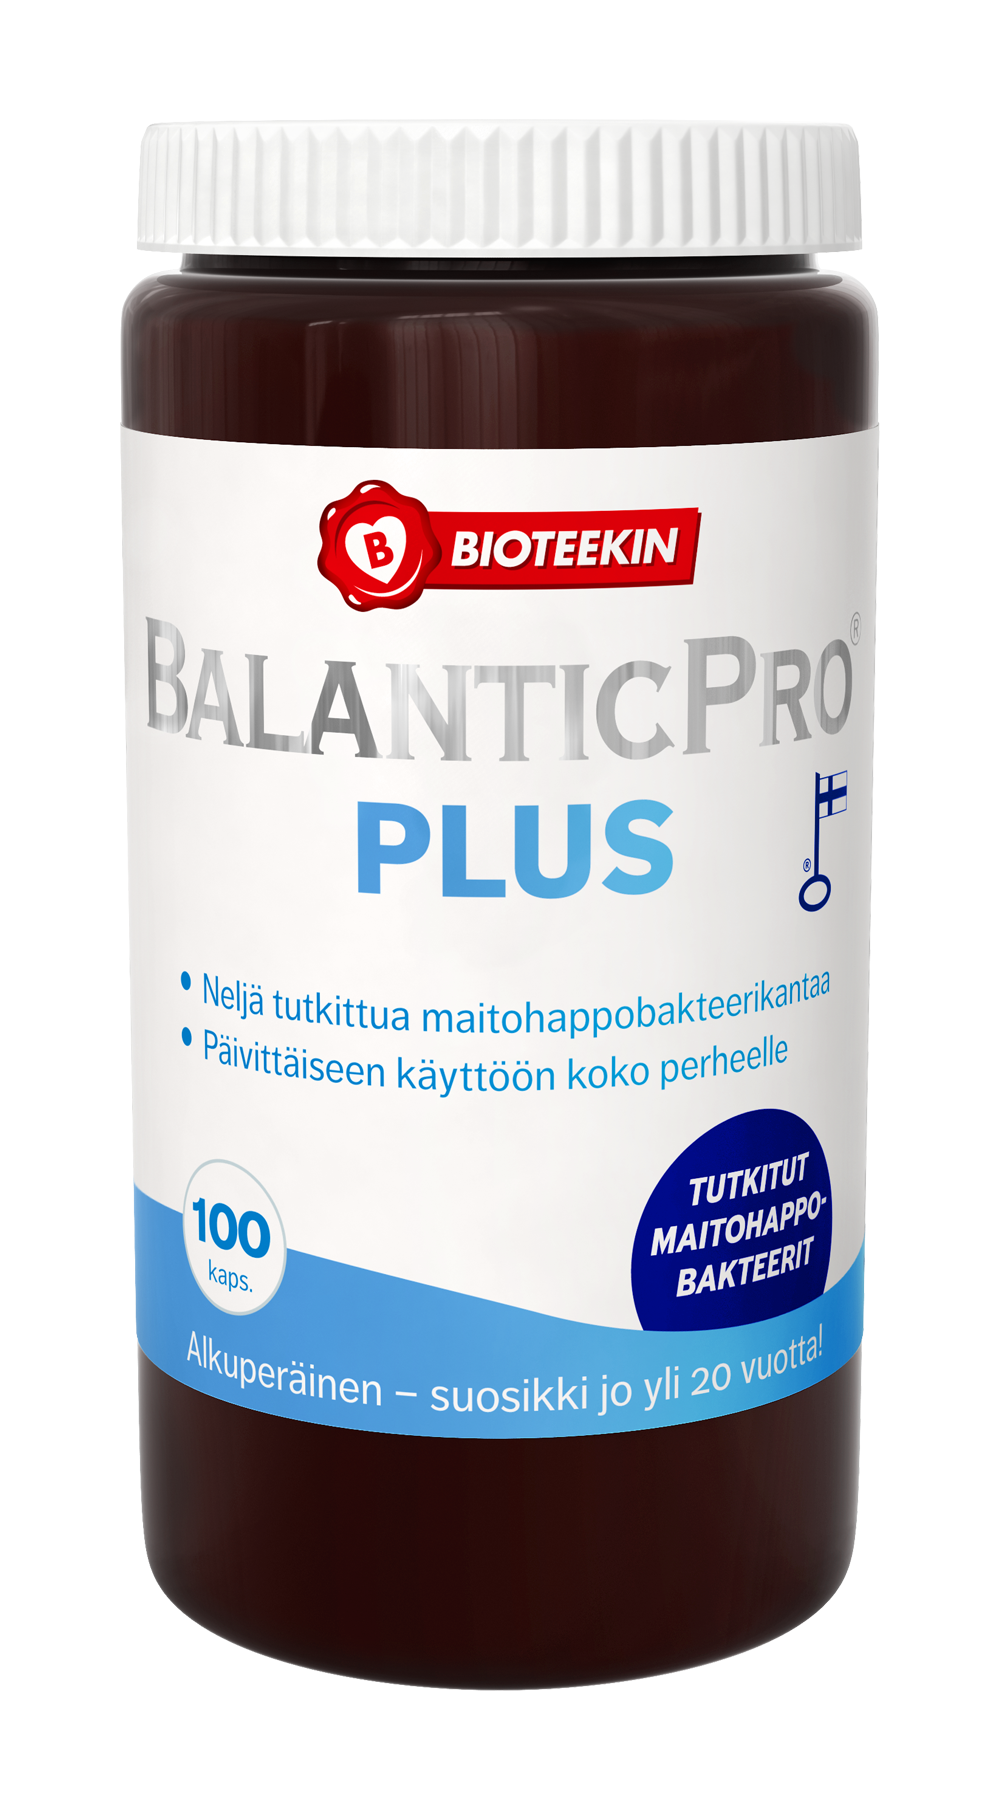 Bioteekin BalanticPro Plus - Maitohappobakteerivalmiste 100 kaps.